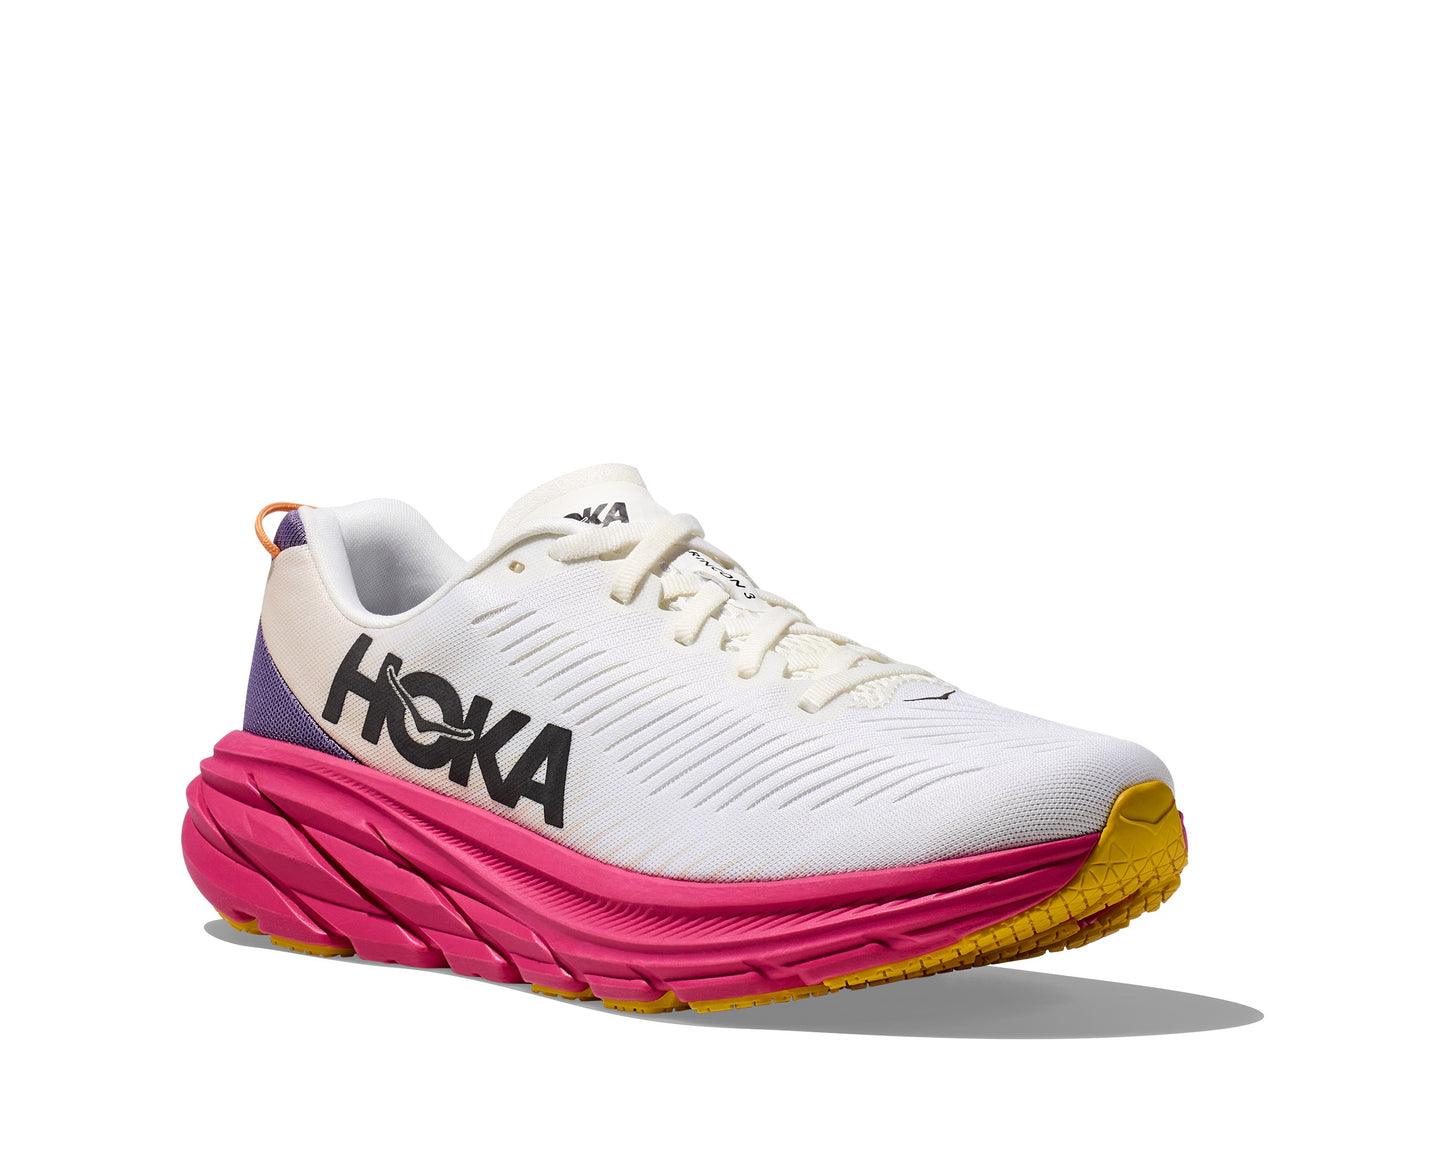 3   - Hoka Rincon 3 נעלי ספורט נשים הוקה רינקון